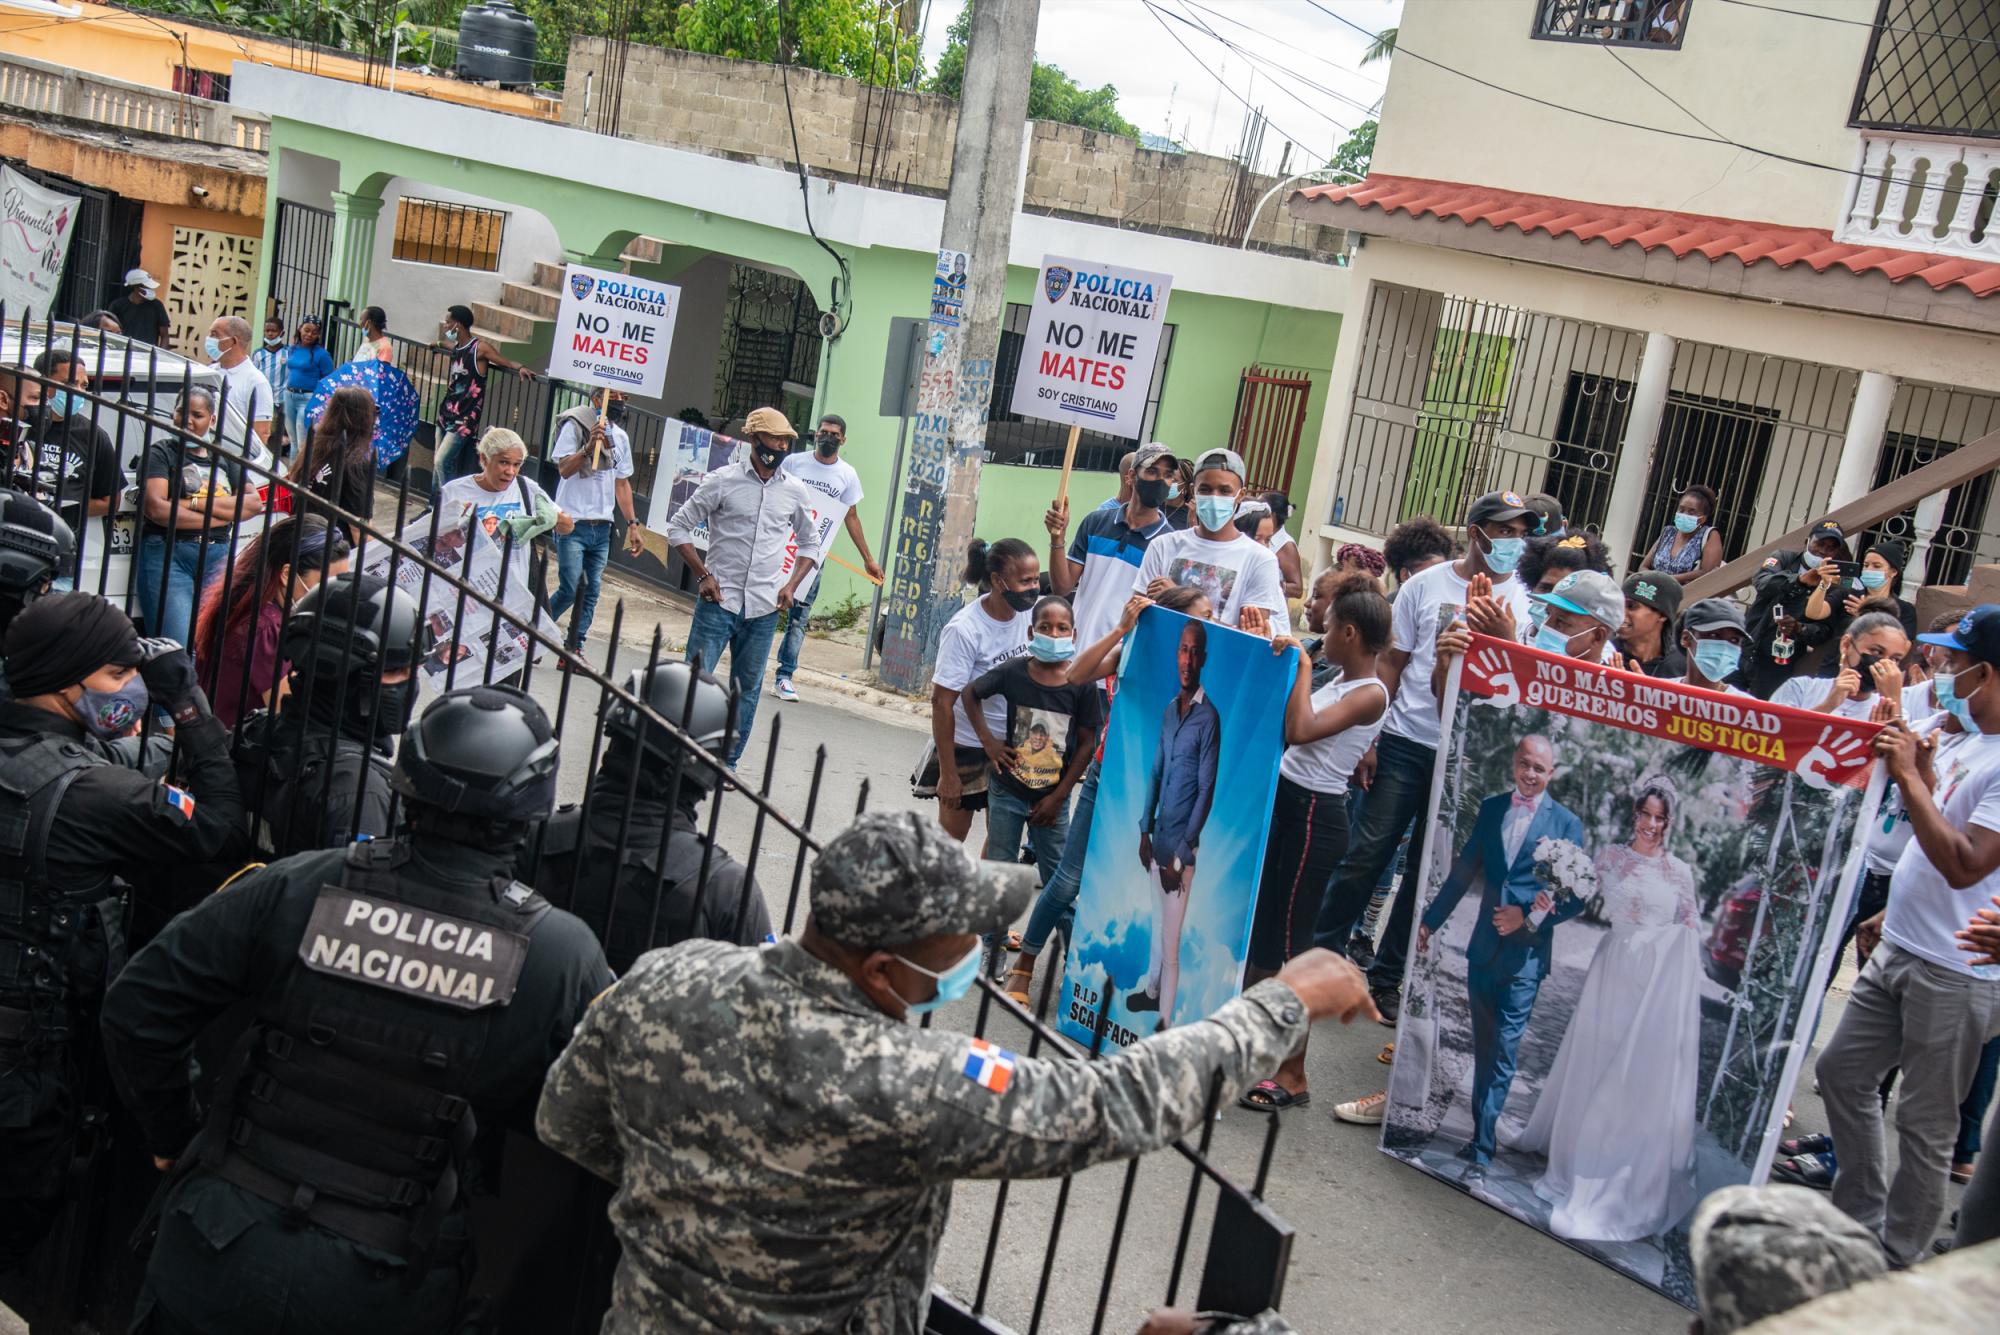 Policía Nacional no me mates, soy cristiano rezaban las pancartas que miraban los oficiales la policía que resguardaban el recinto judicial (Foto: Juan Miguel Peña)